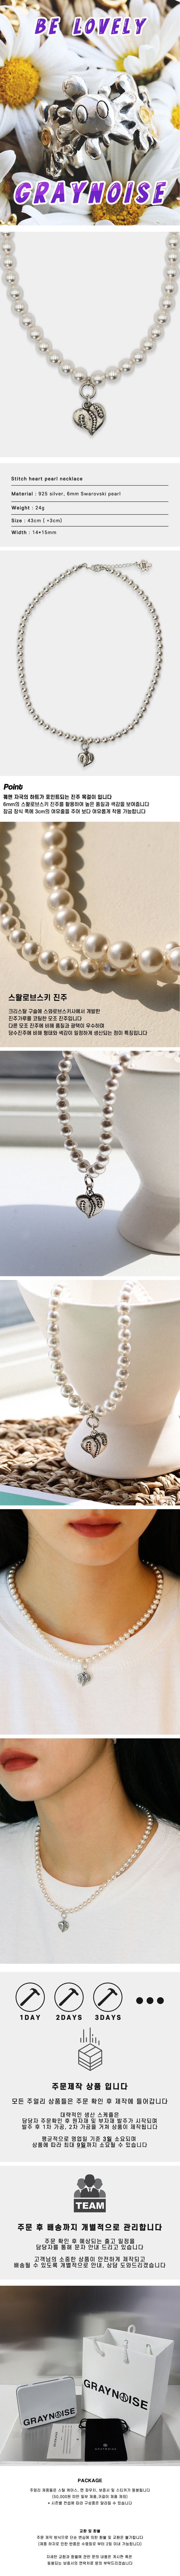 그레이노이즈(GRAYNOISE) Stitch heart pearl necklace (925 silver)